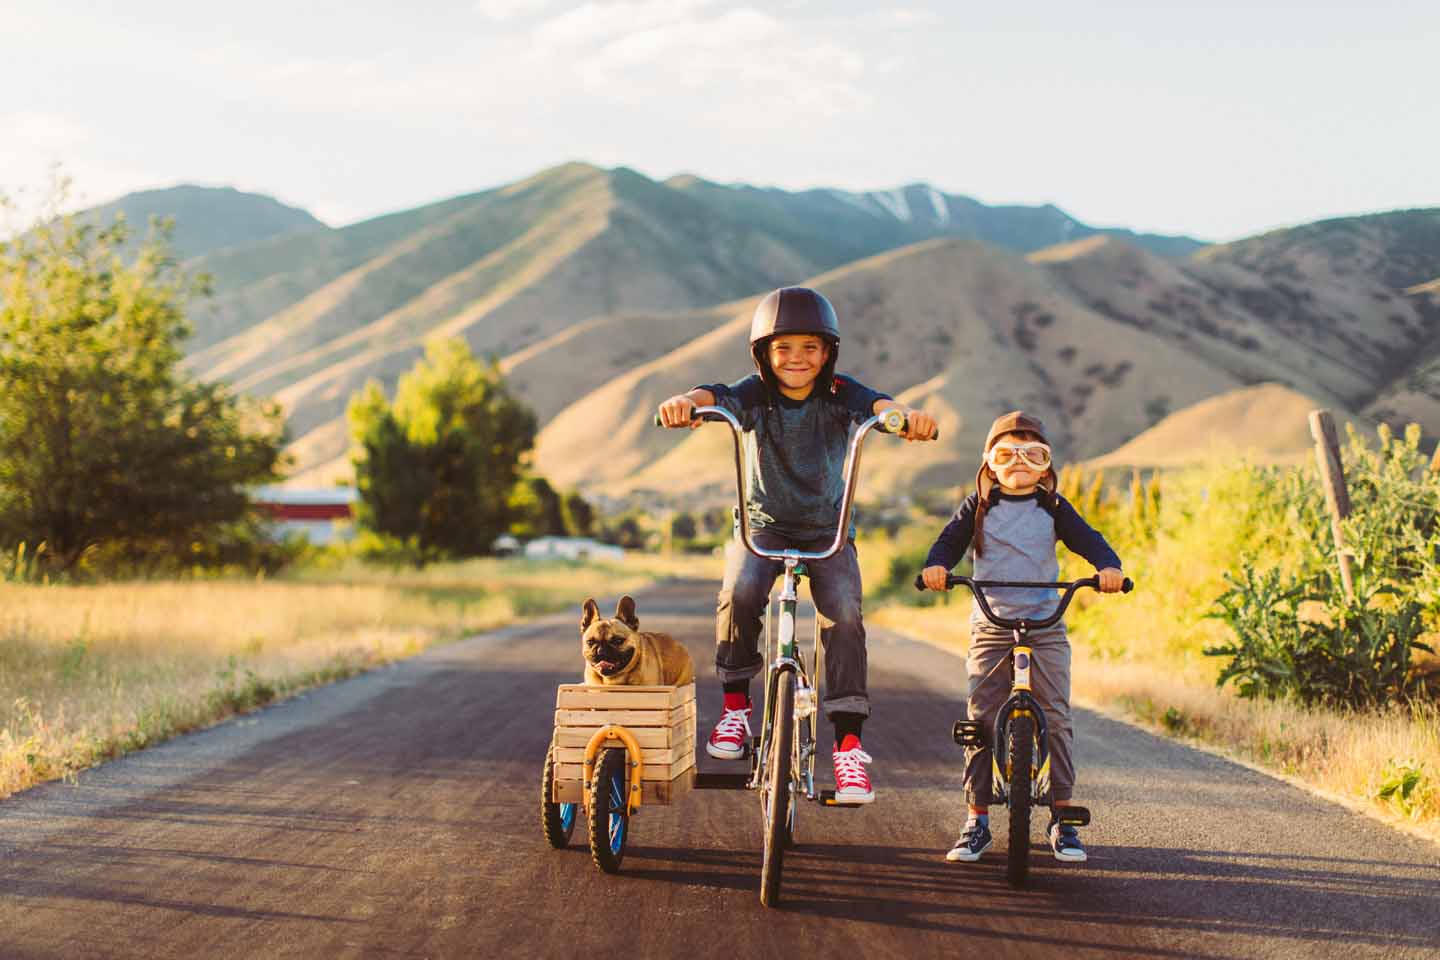 Ein Junge auf dem Fahrrad mit Beiwagen, in dem ein Hund sitzt, fährt neben einem anderen Jungen her.